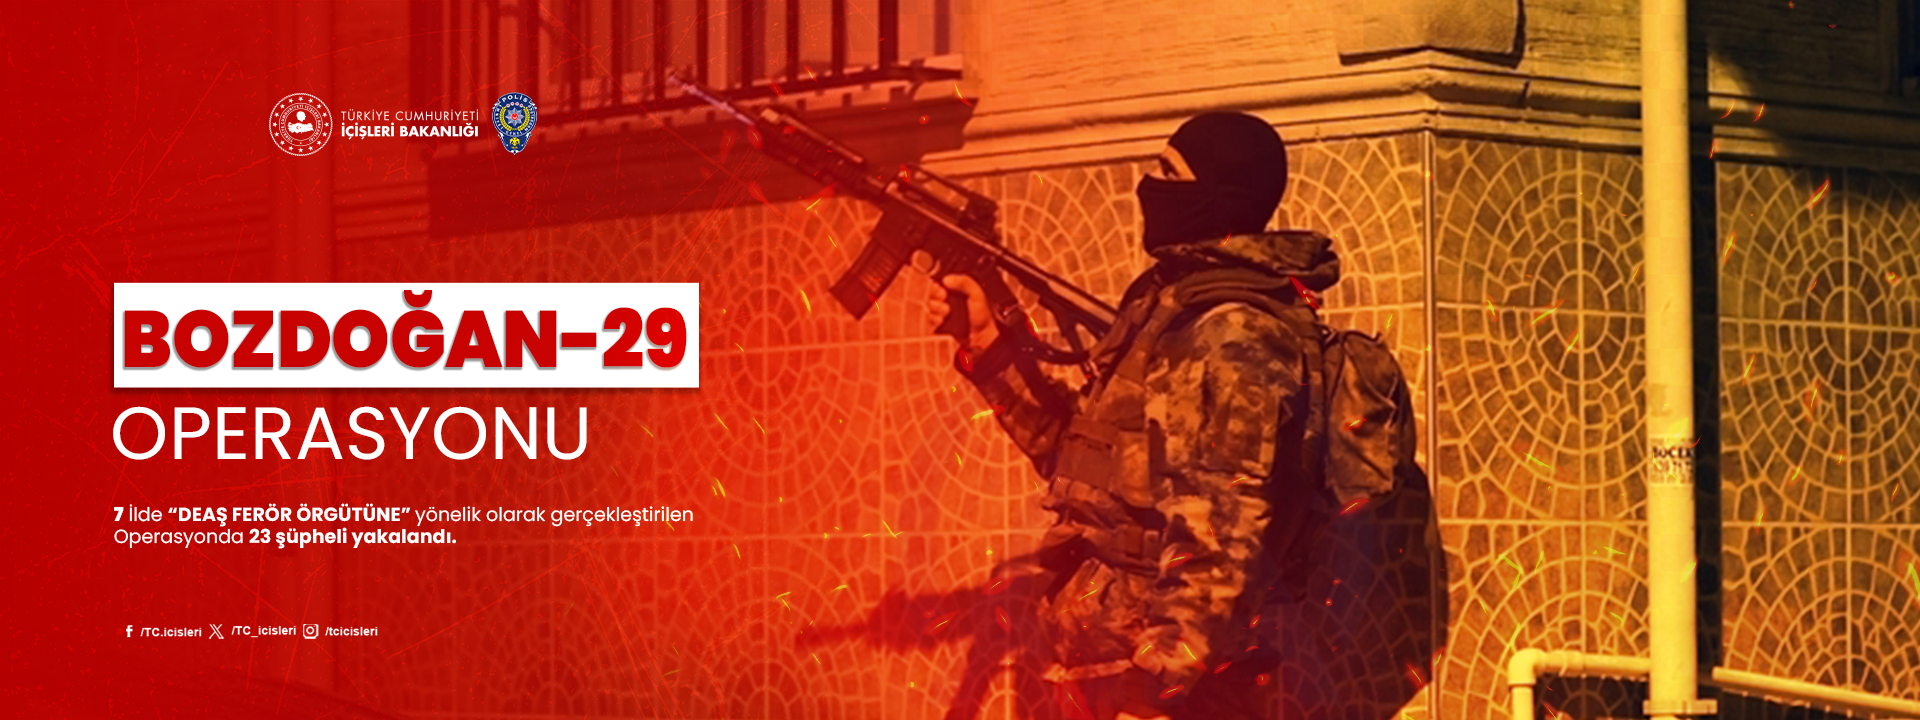 DEAŞ terör örgütüne yönelik operasyonda 23 şüpheli yakalandı